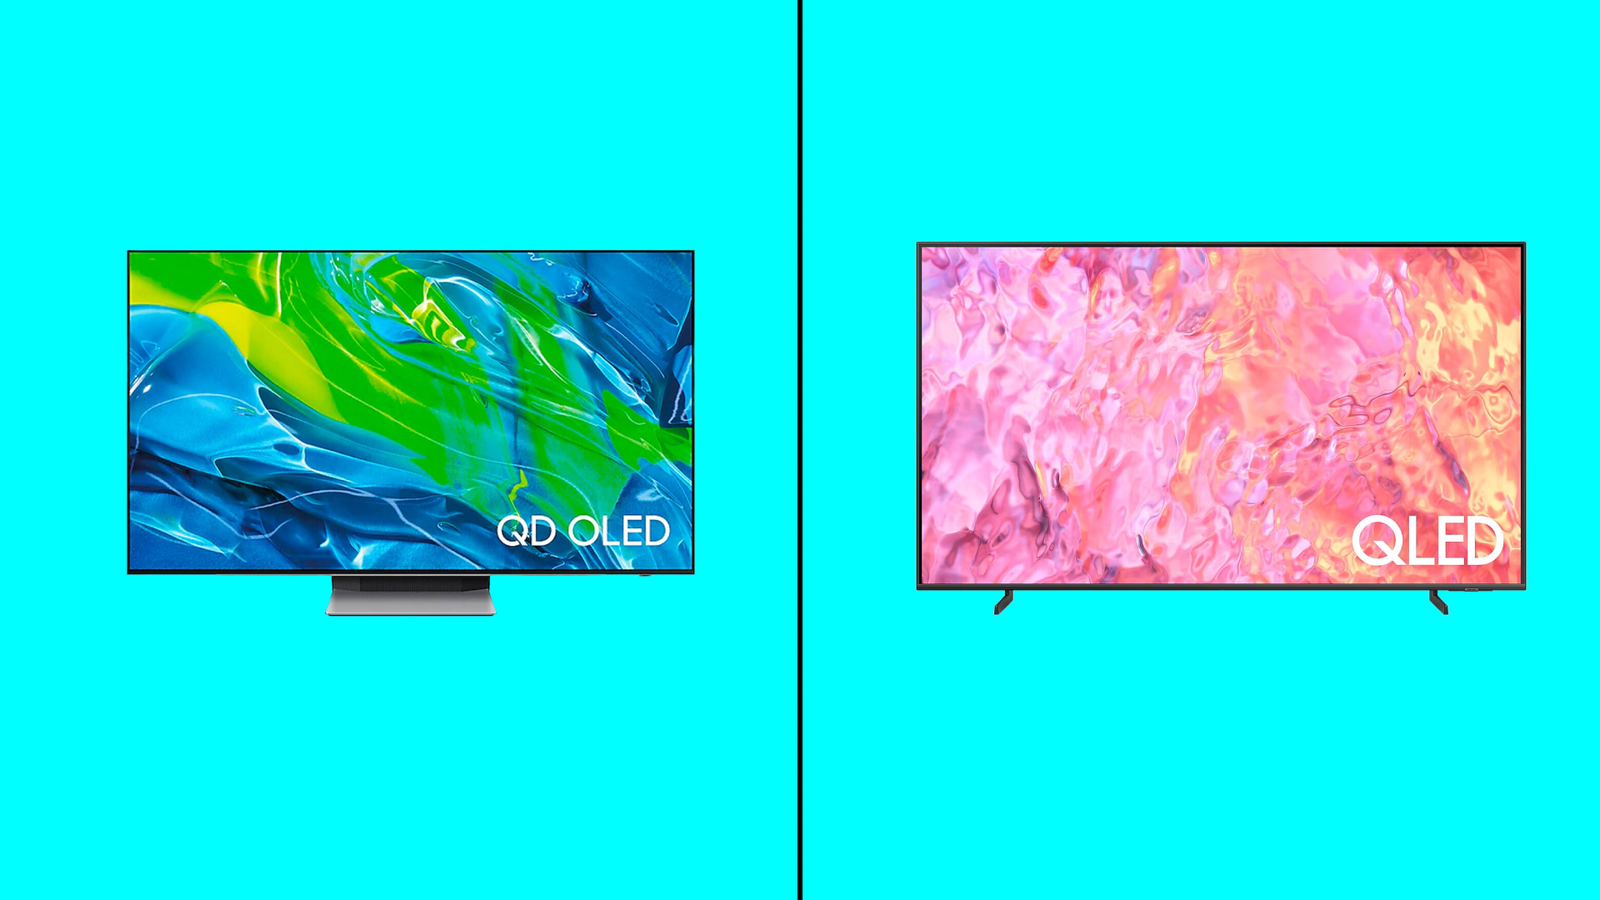 QLED vs QD-OLED - An image of a QLED TV and a QD-OLED TV side by side